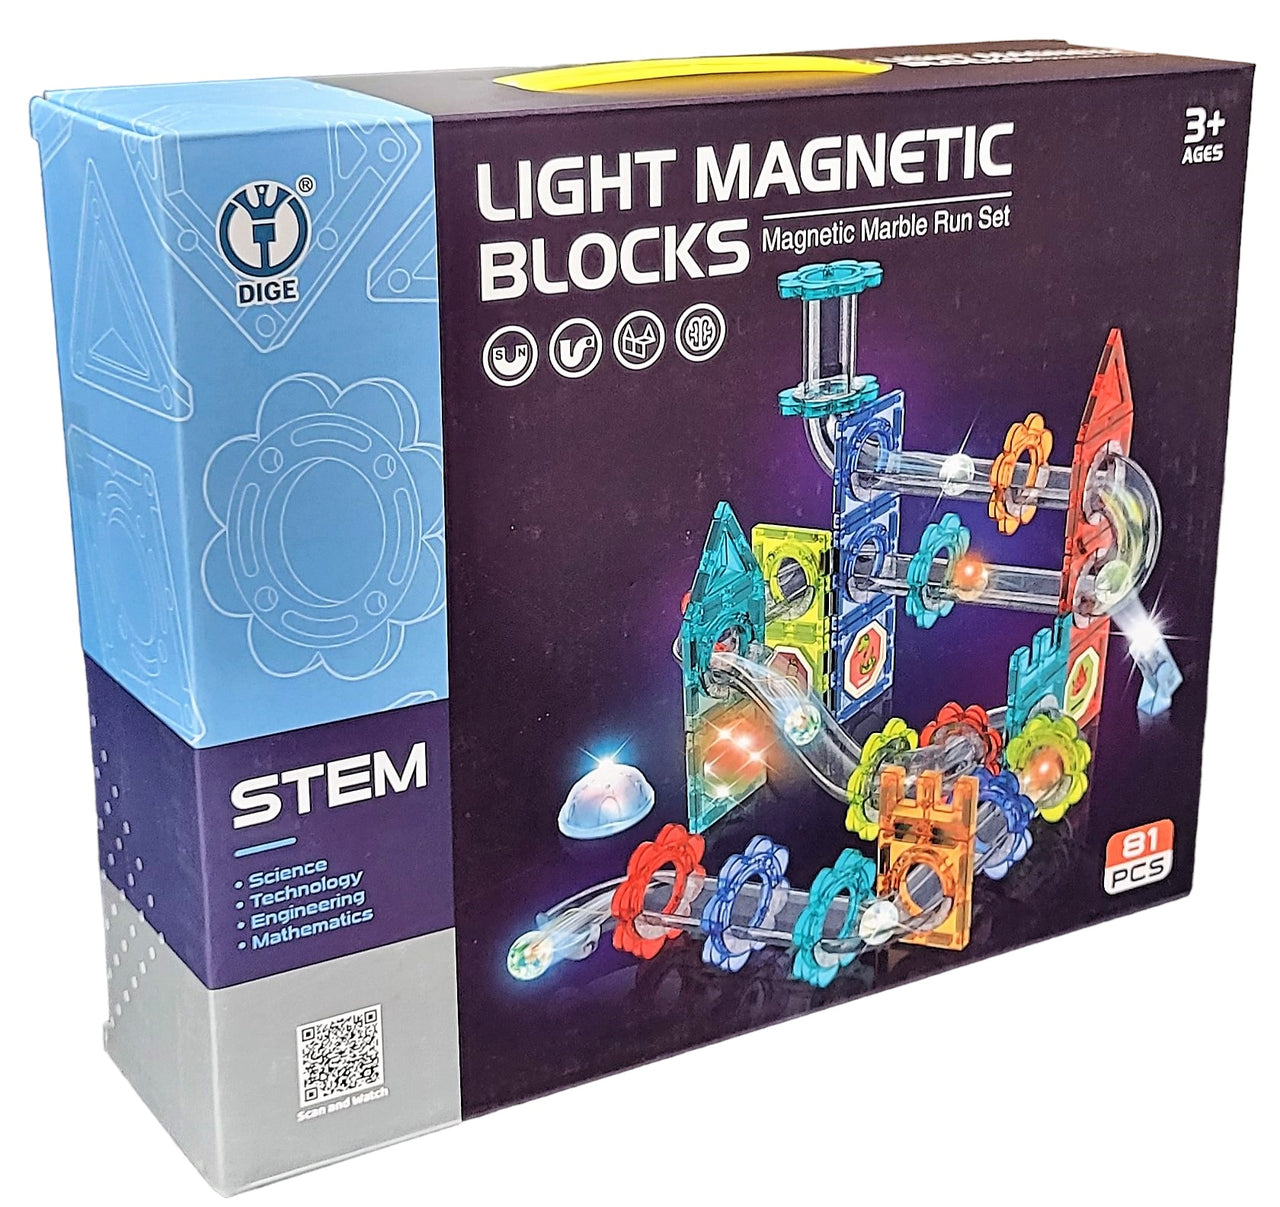 81Pcs Light Magnetic Marble Run Block Set